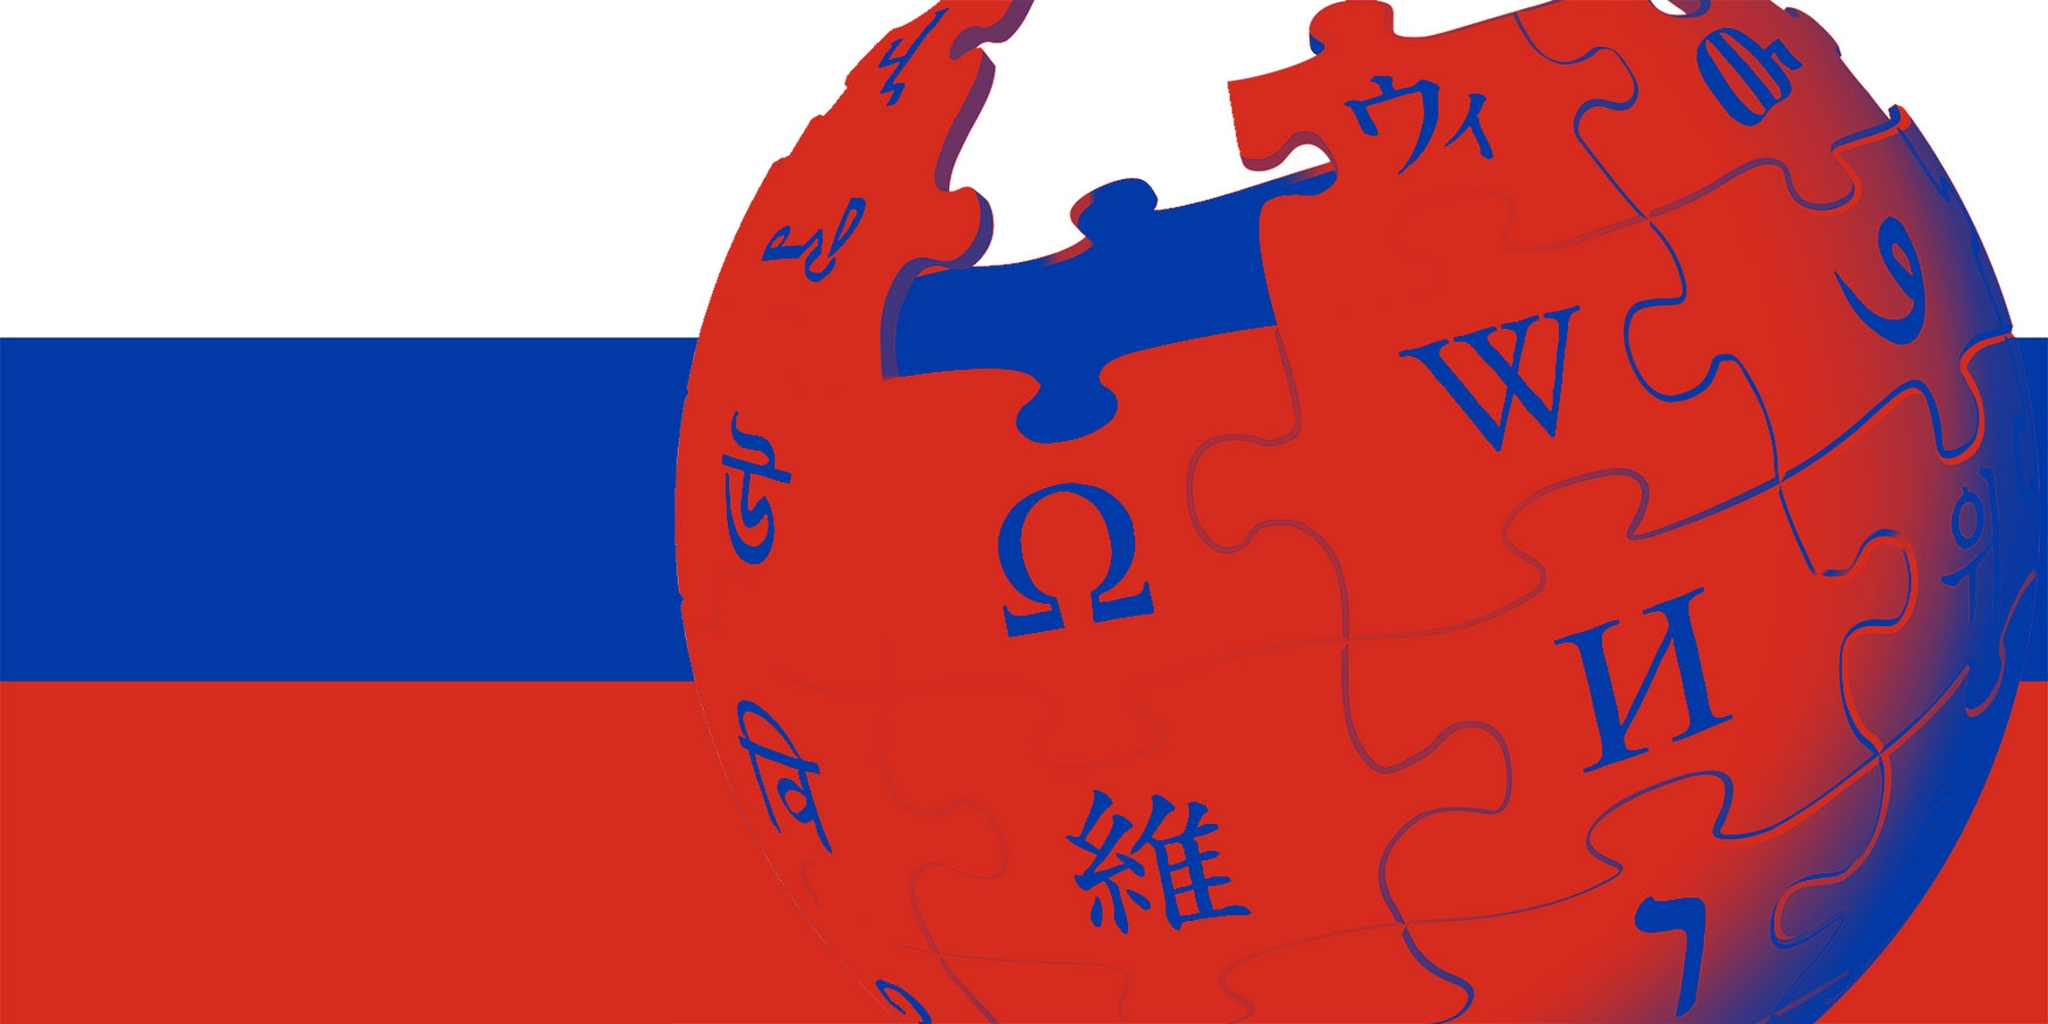 Российская википедия аналог